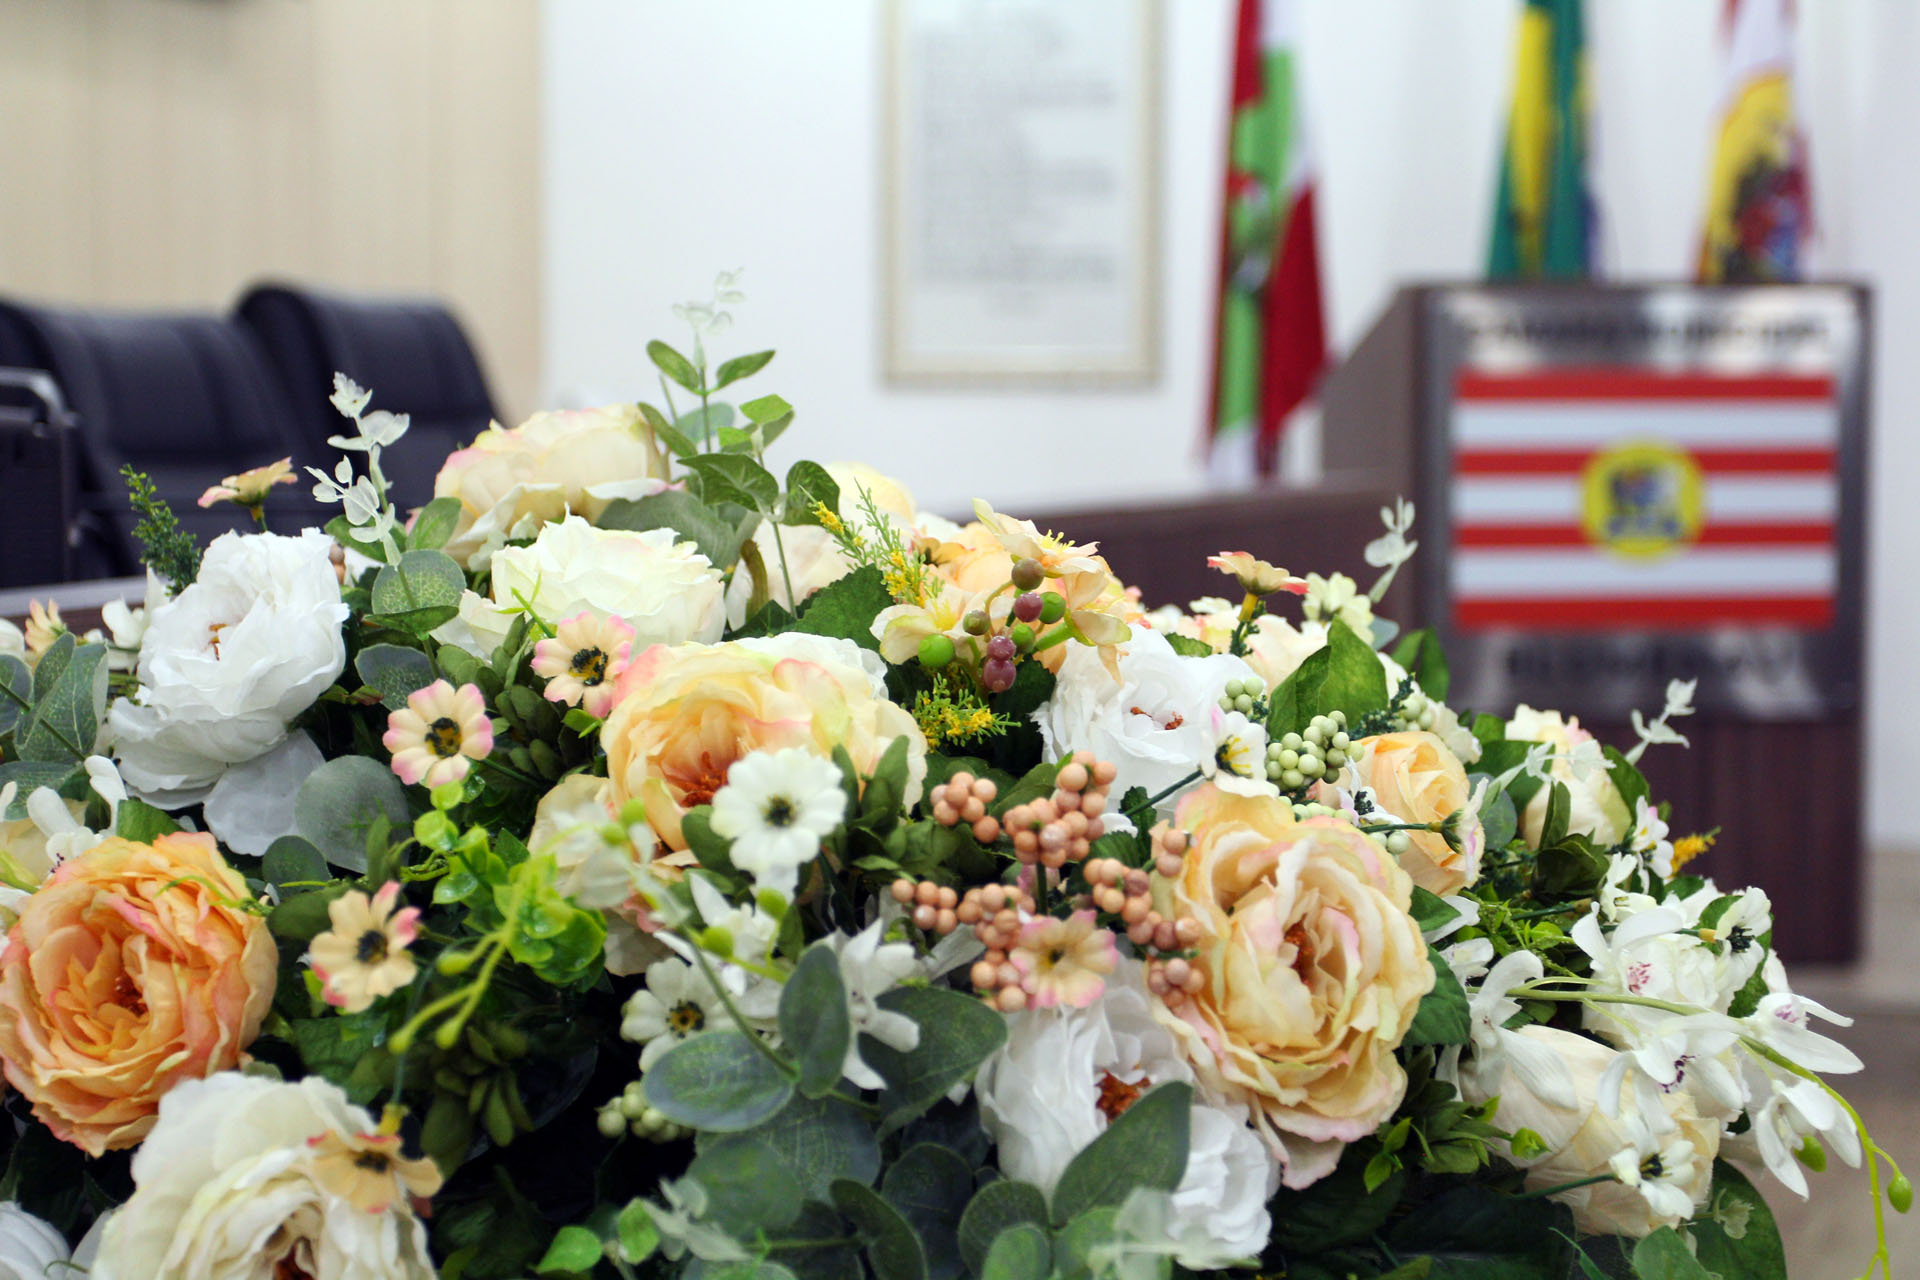 Legislativo de Blumenau presta homenagens em sessão solene